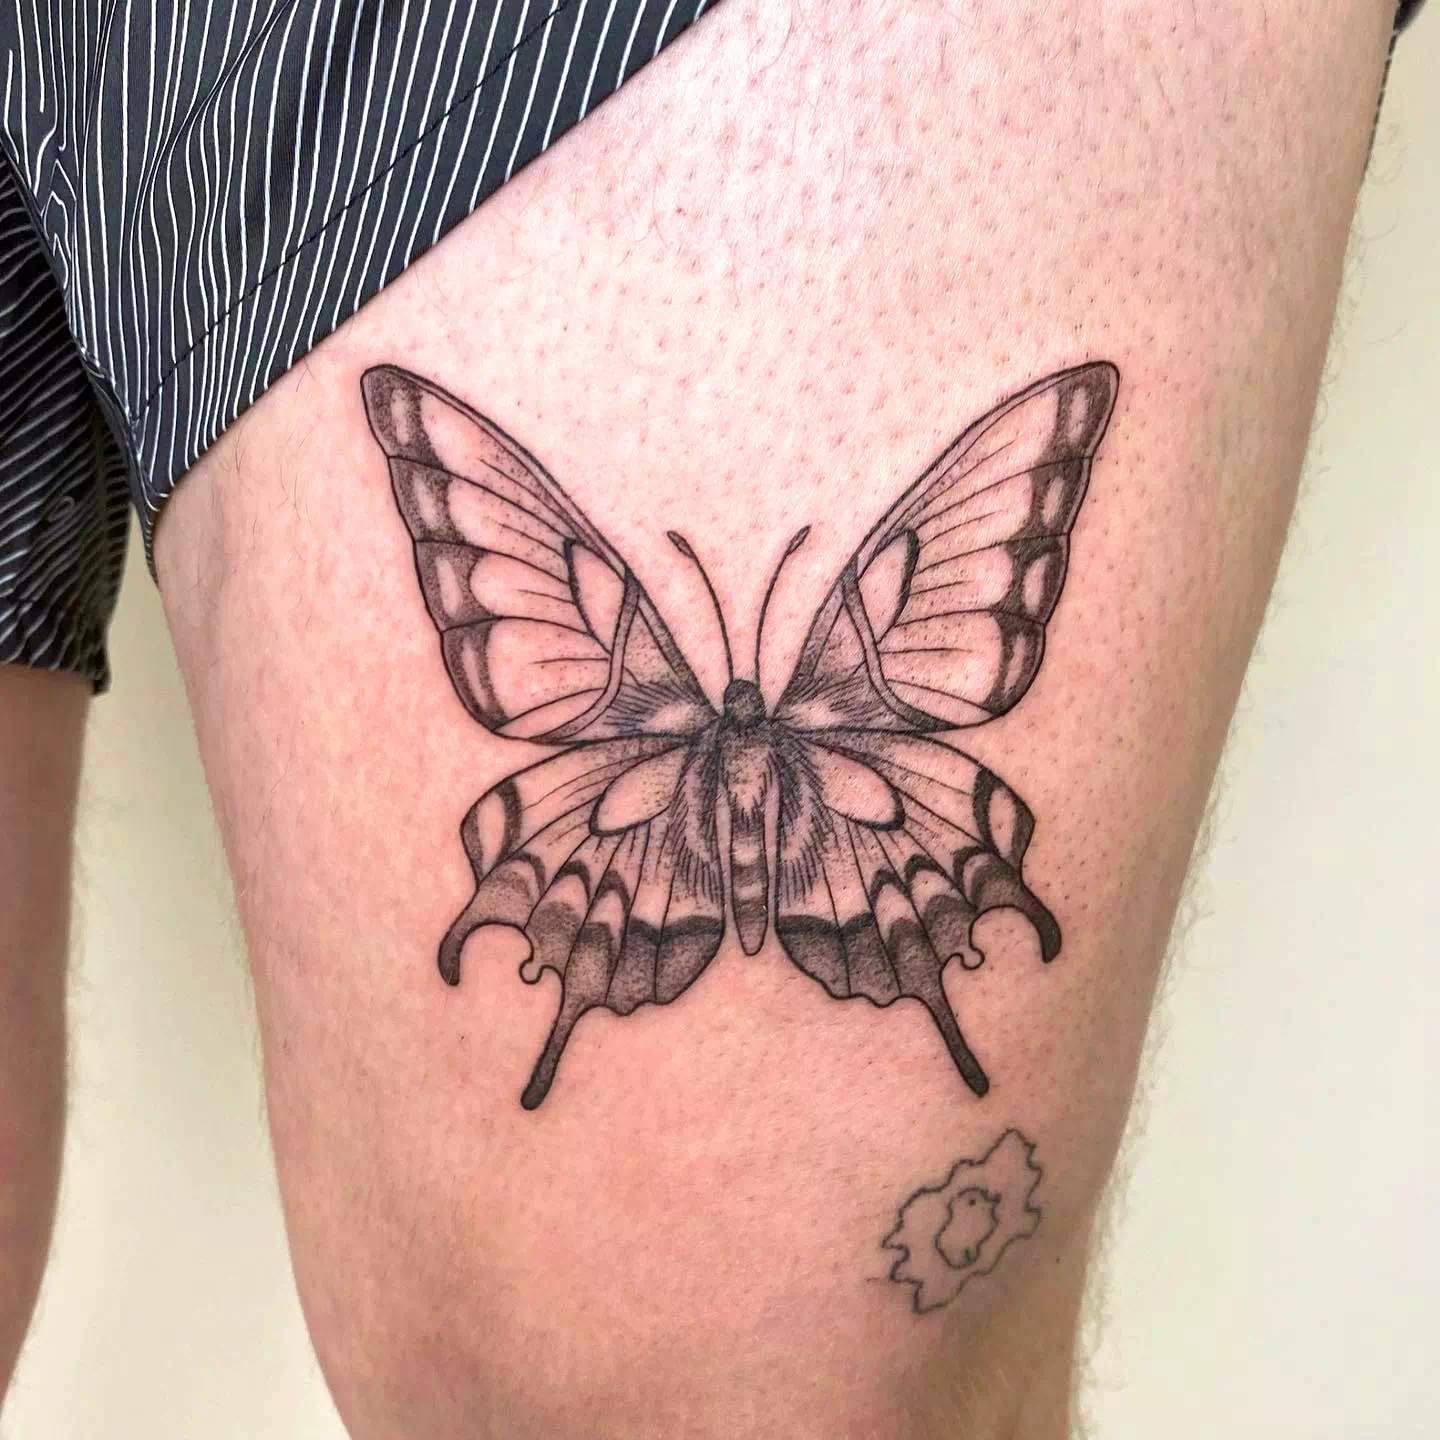 Butterfly Calf Tattoo Ideas 1